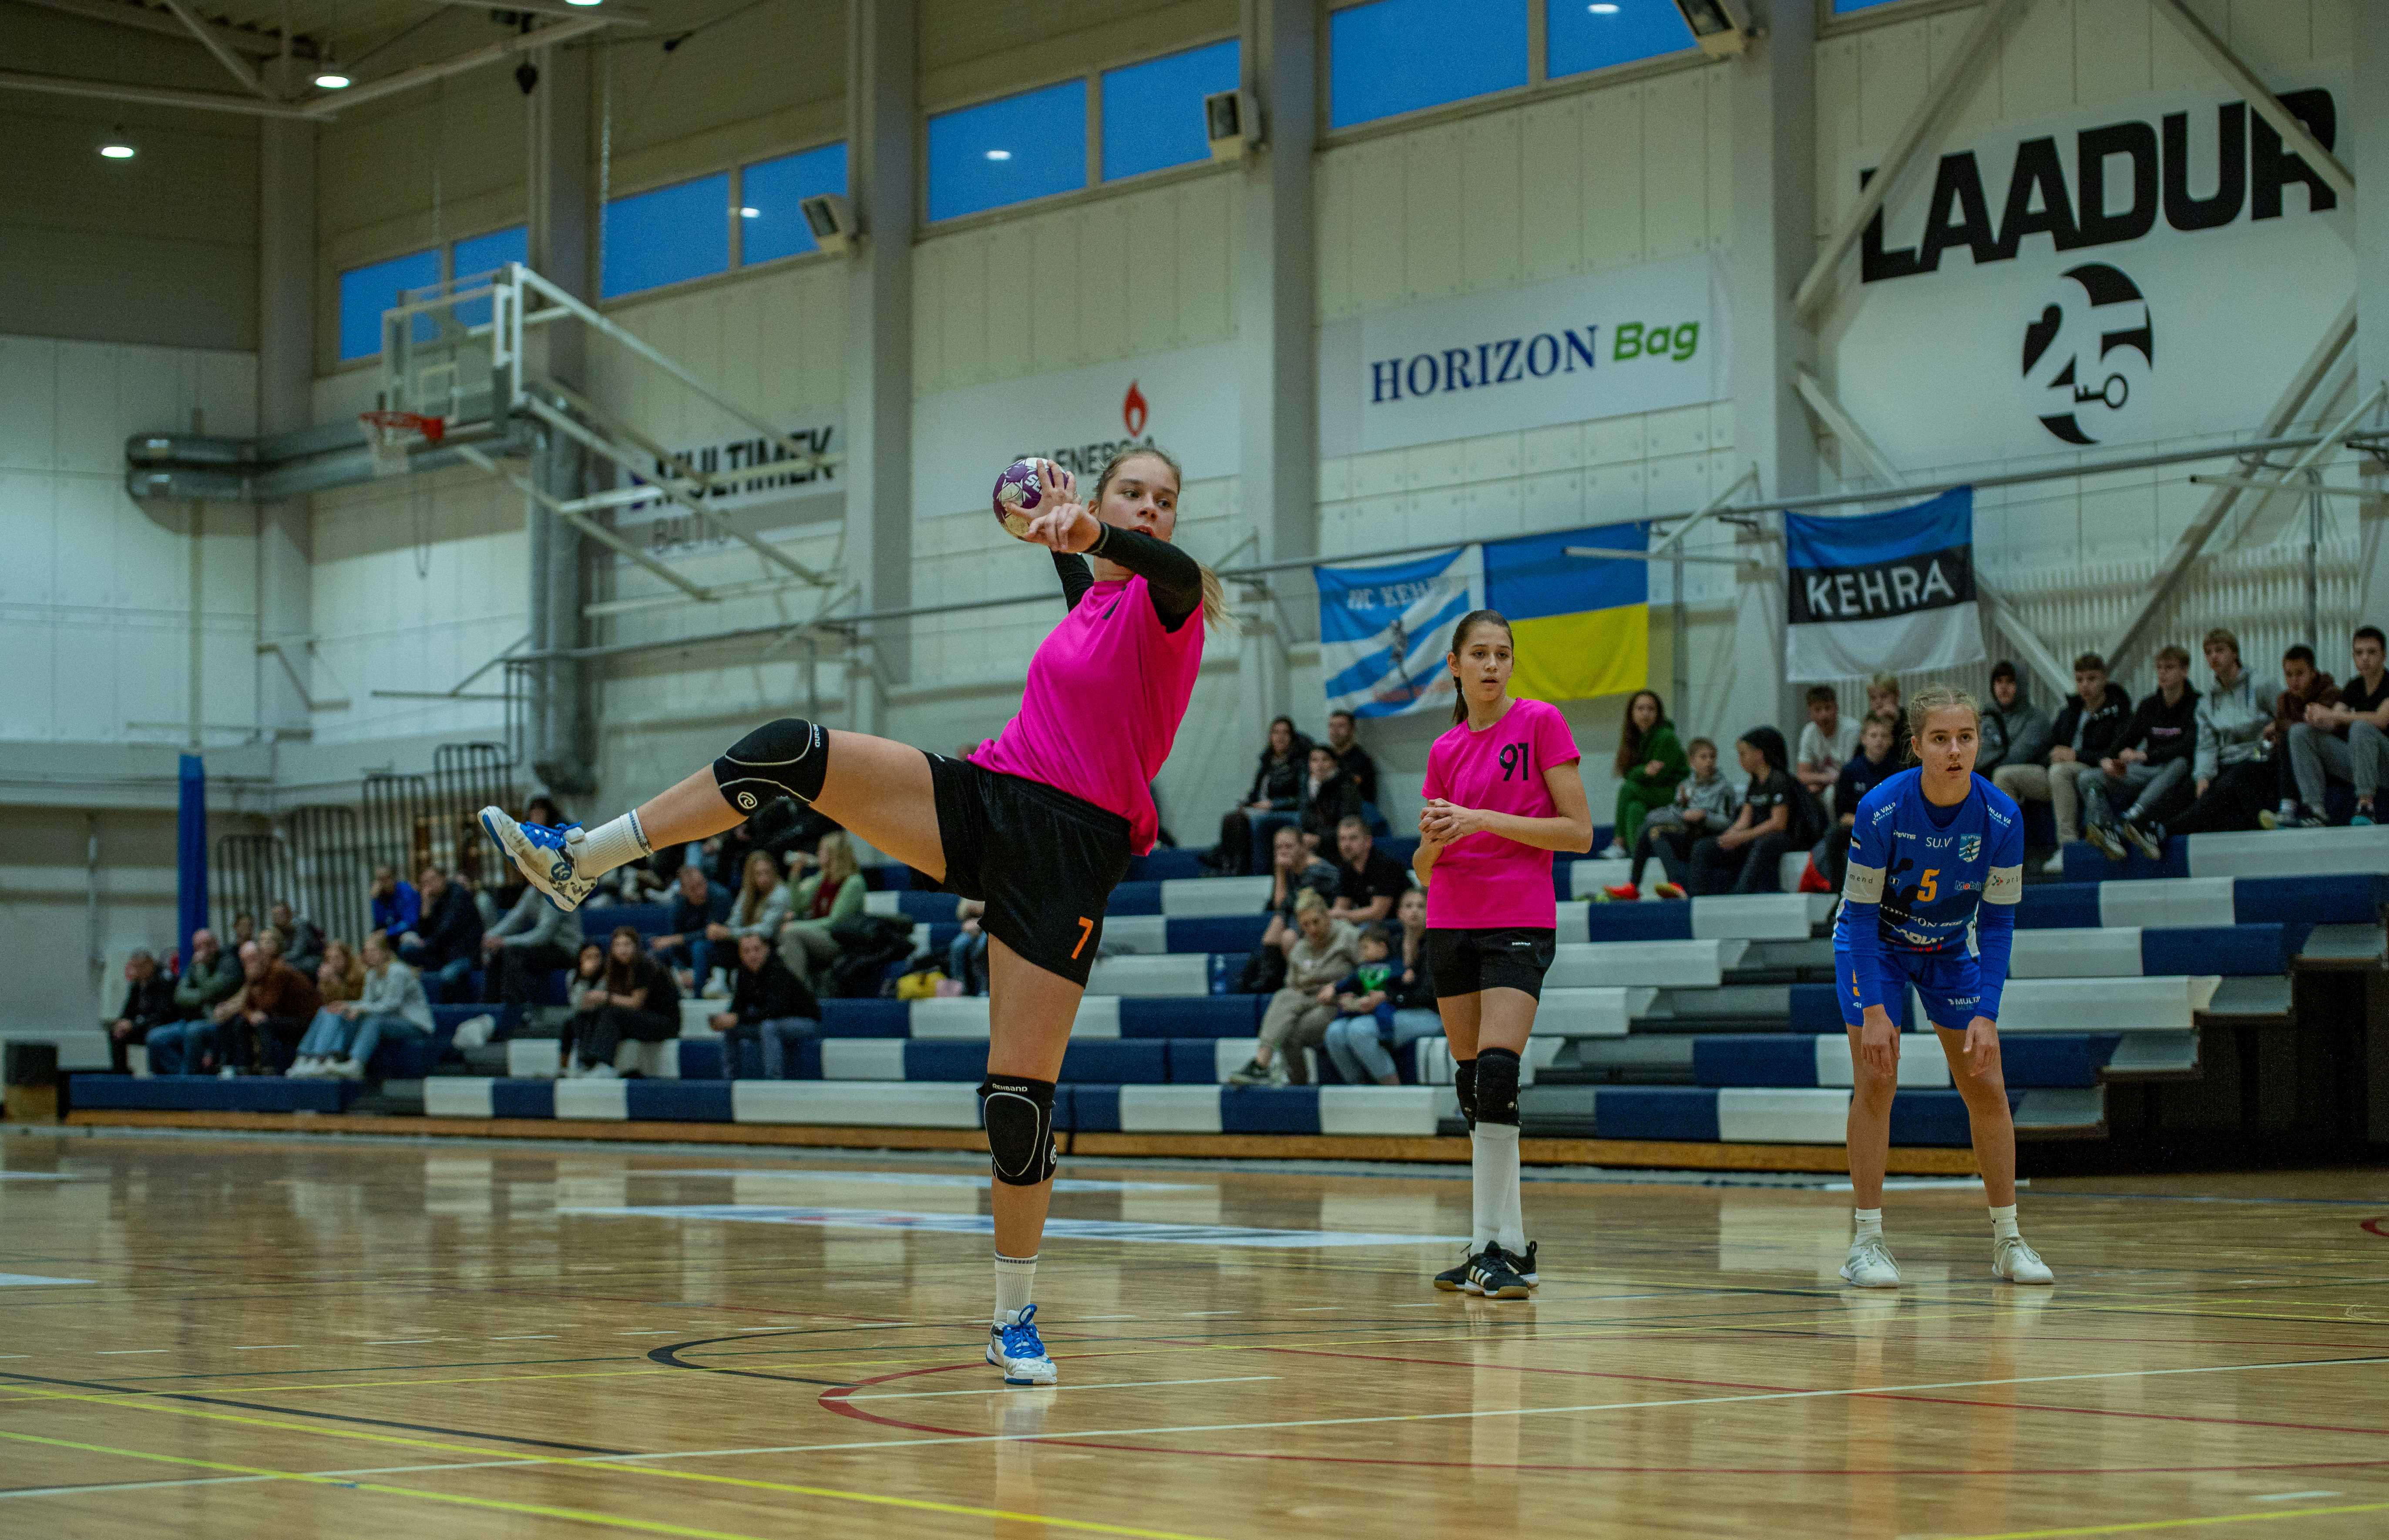 Nädalavahetusel selgub Kehras tütarlaste B vanuseklassi meister 2024 Eesti meistrivõistlustel käsipallis